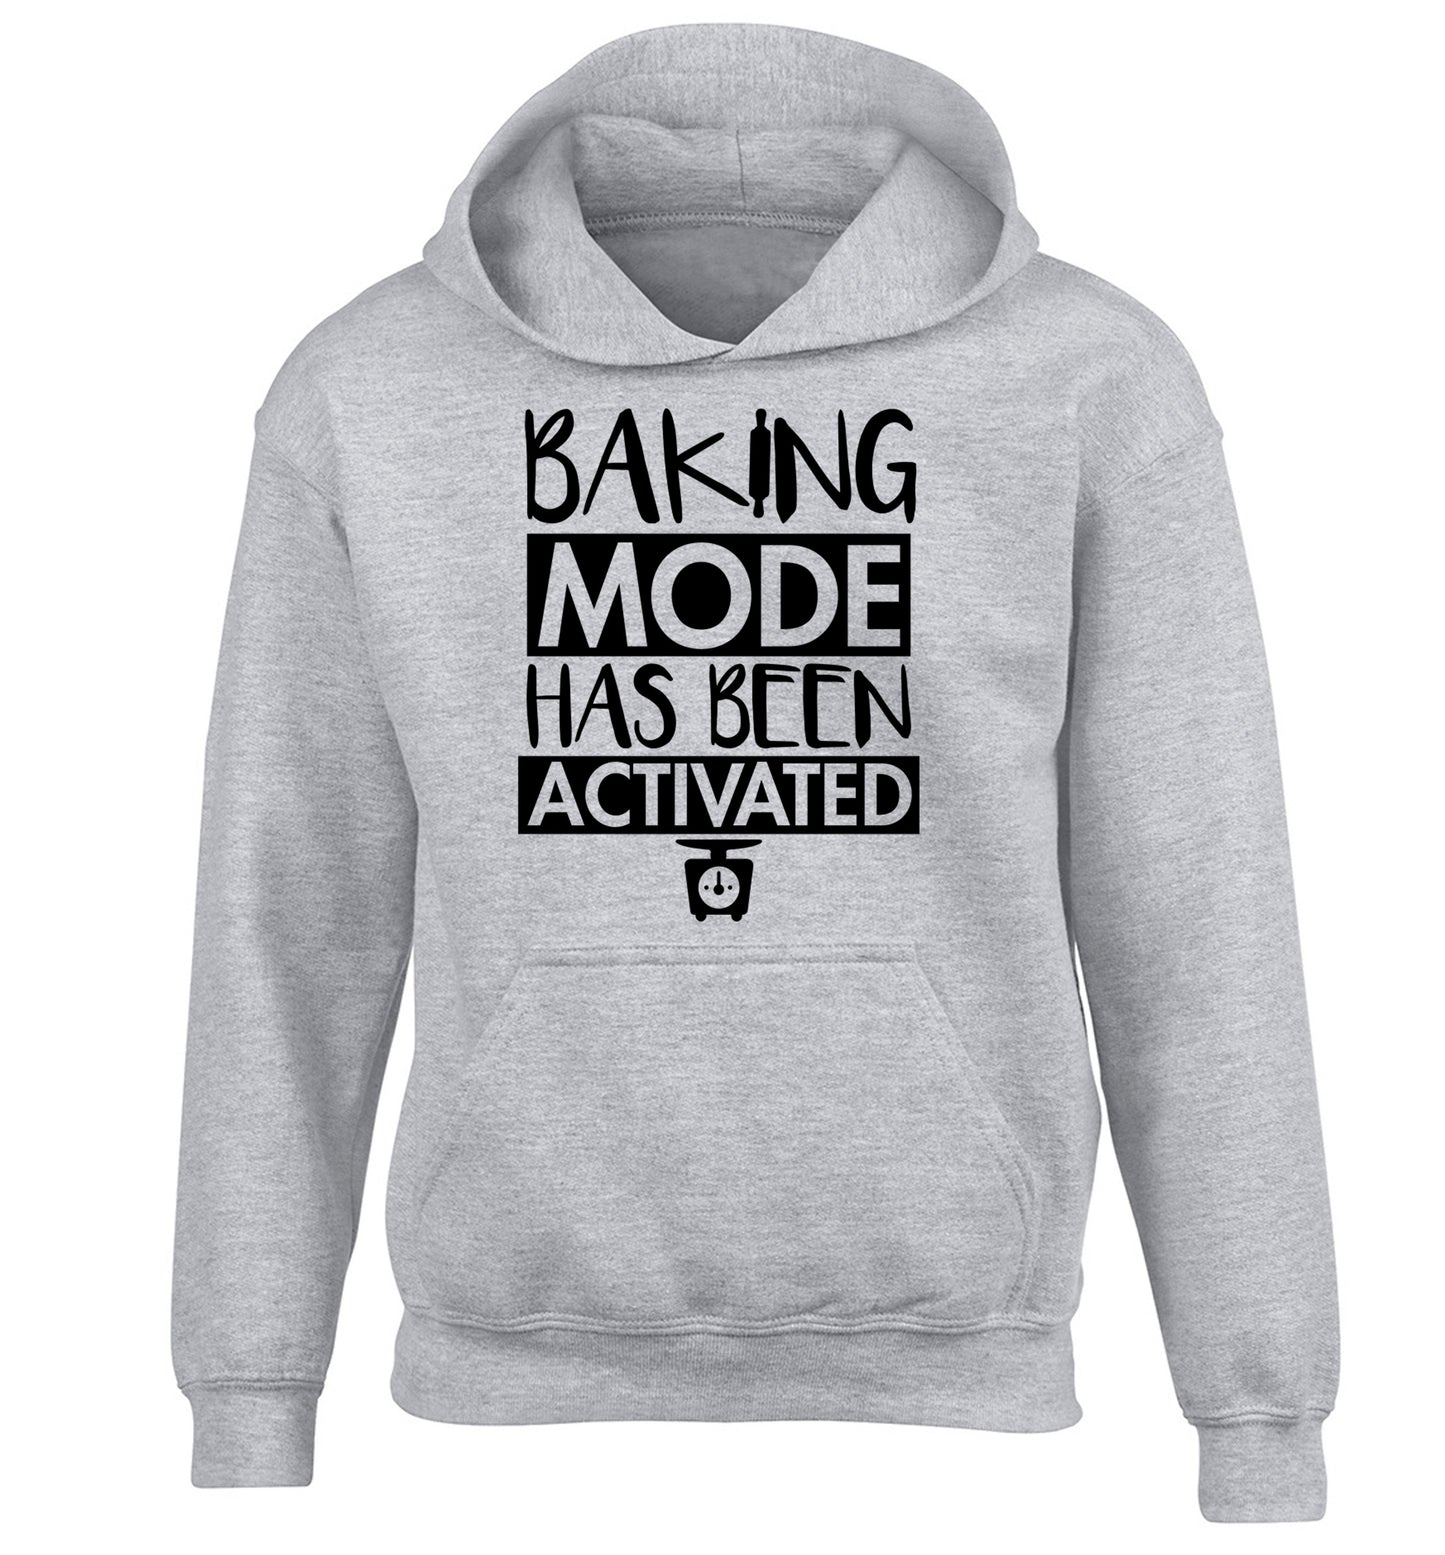 Baking mode has been activated children's grey hoodie 12-14 Years